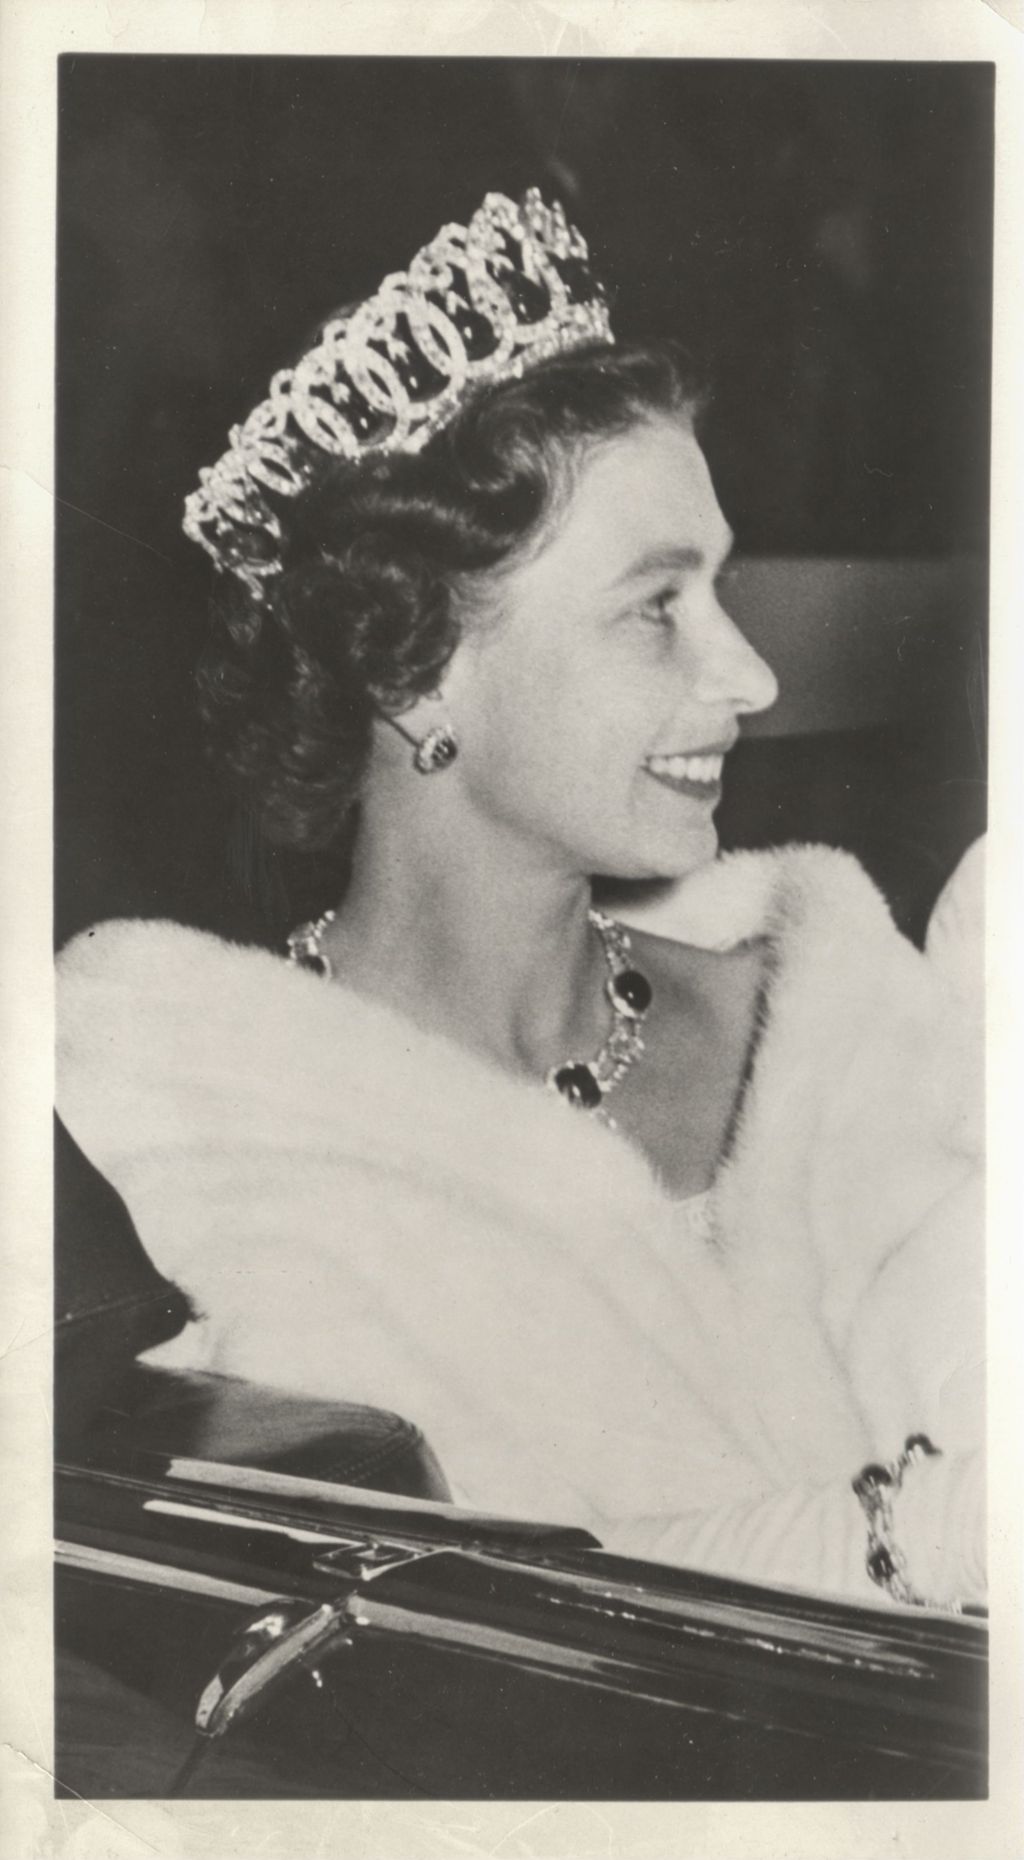 Queen Elizabeth II in an open car wearing formal attire